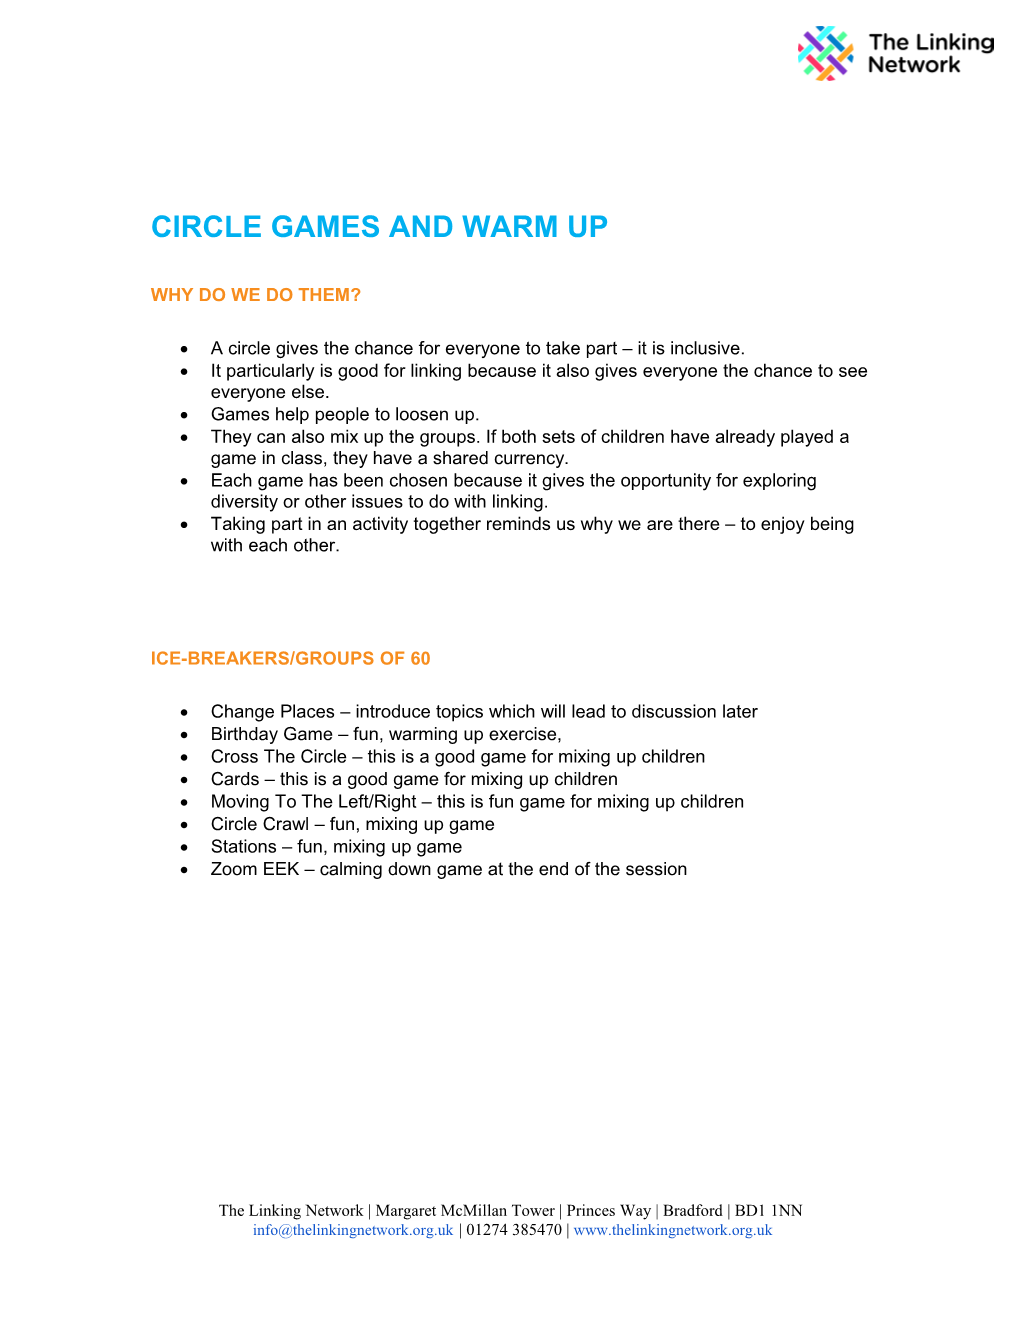 Circle Games and Warm-Ups